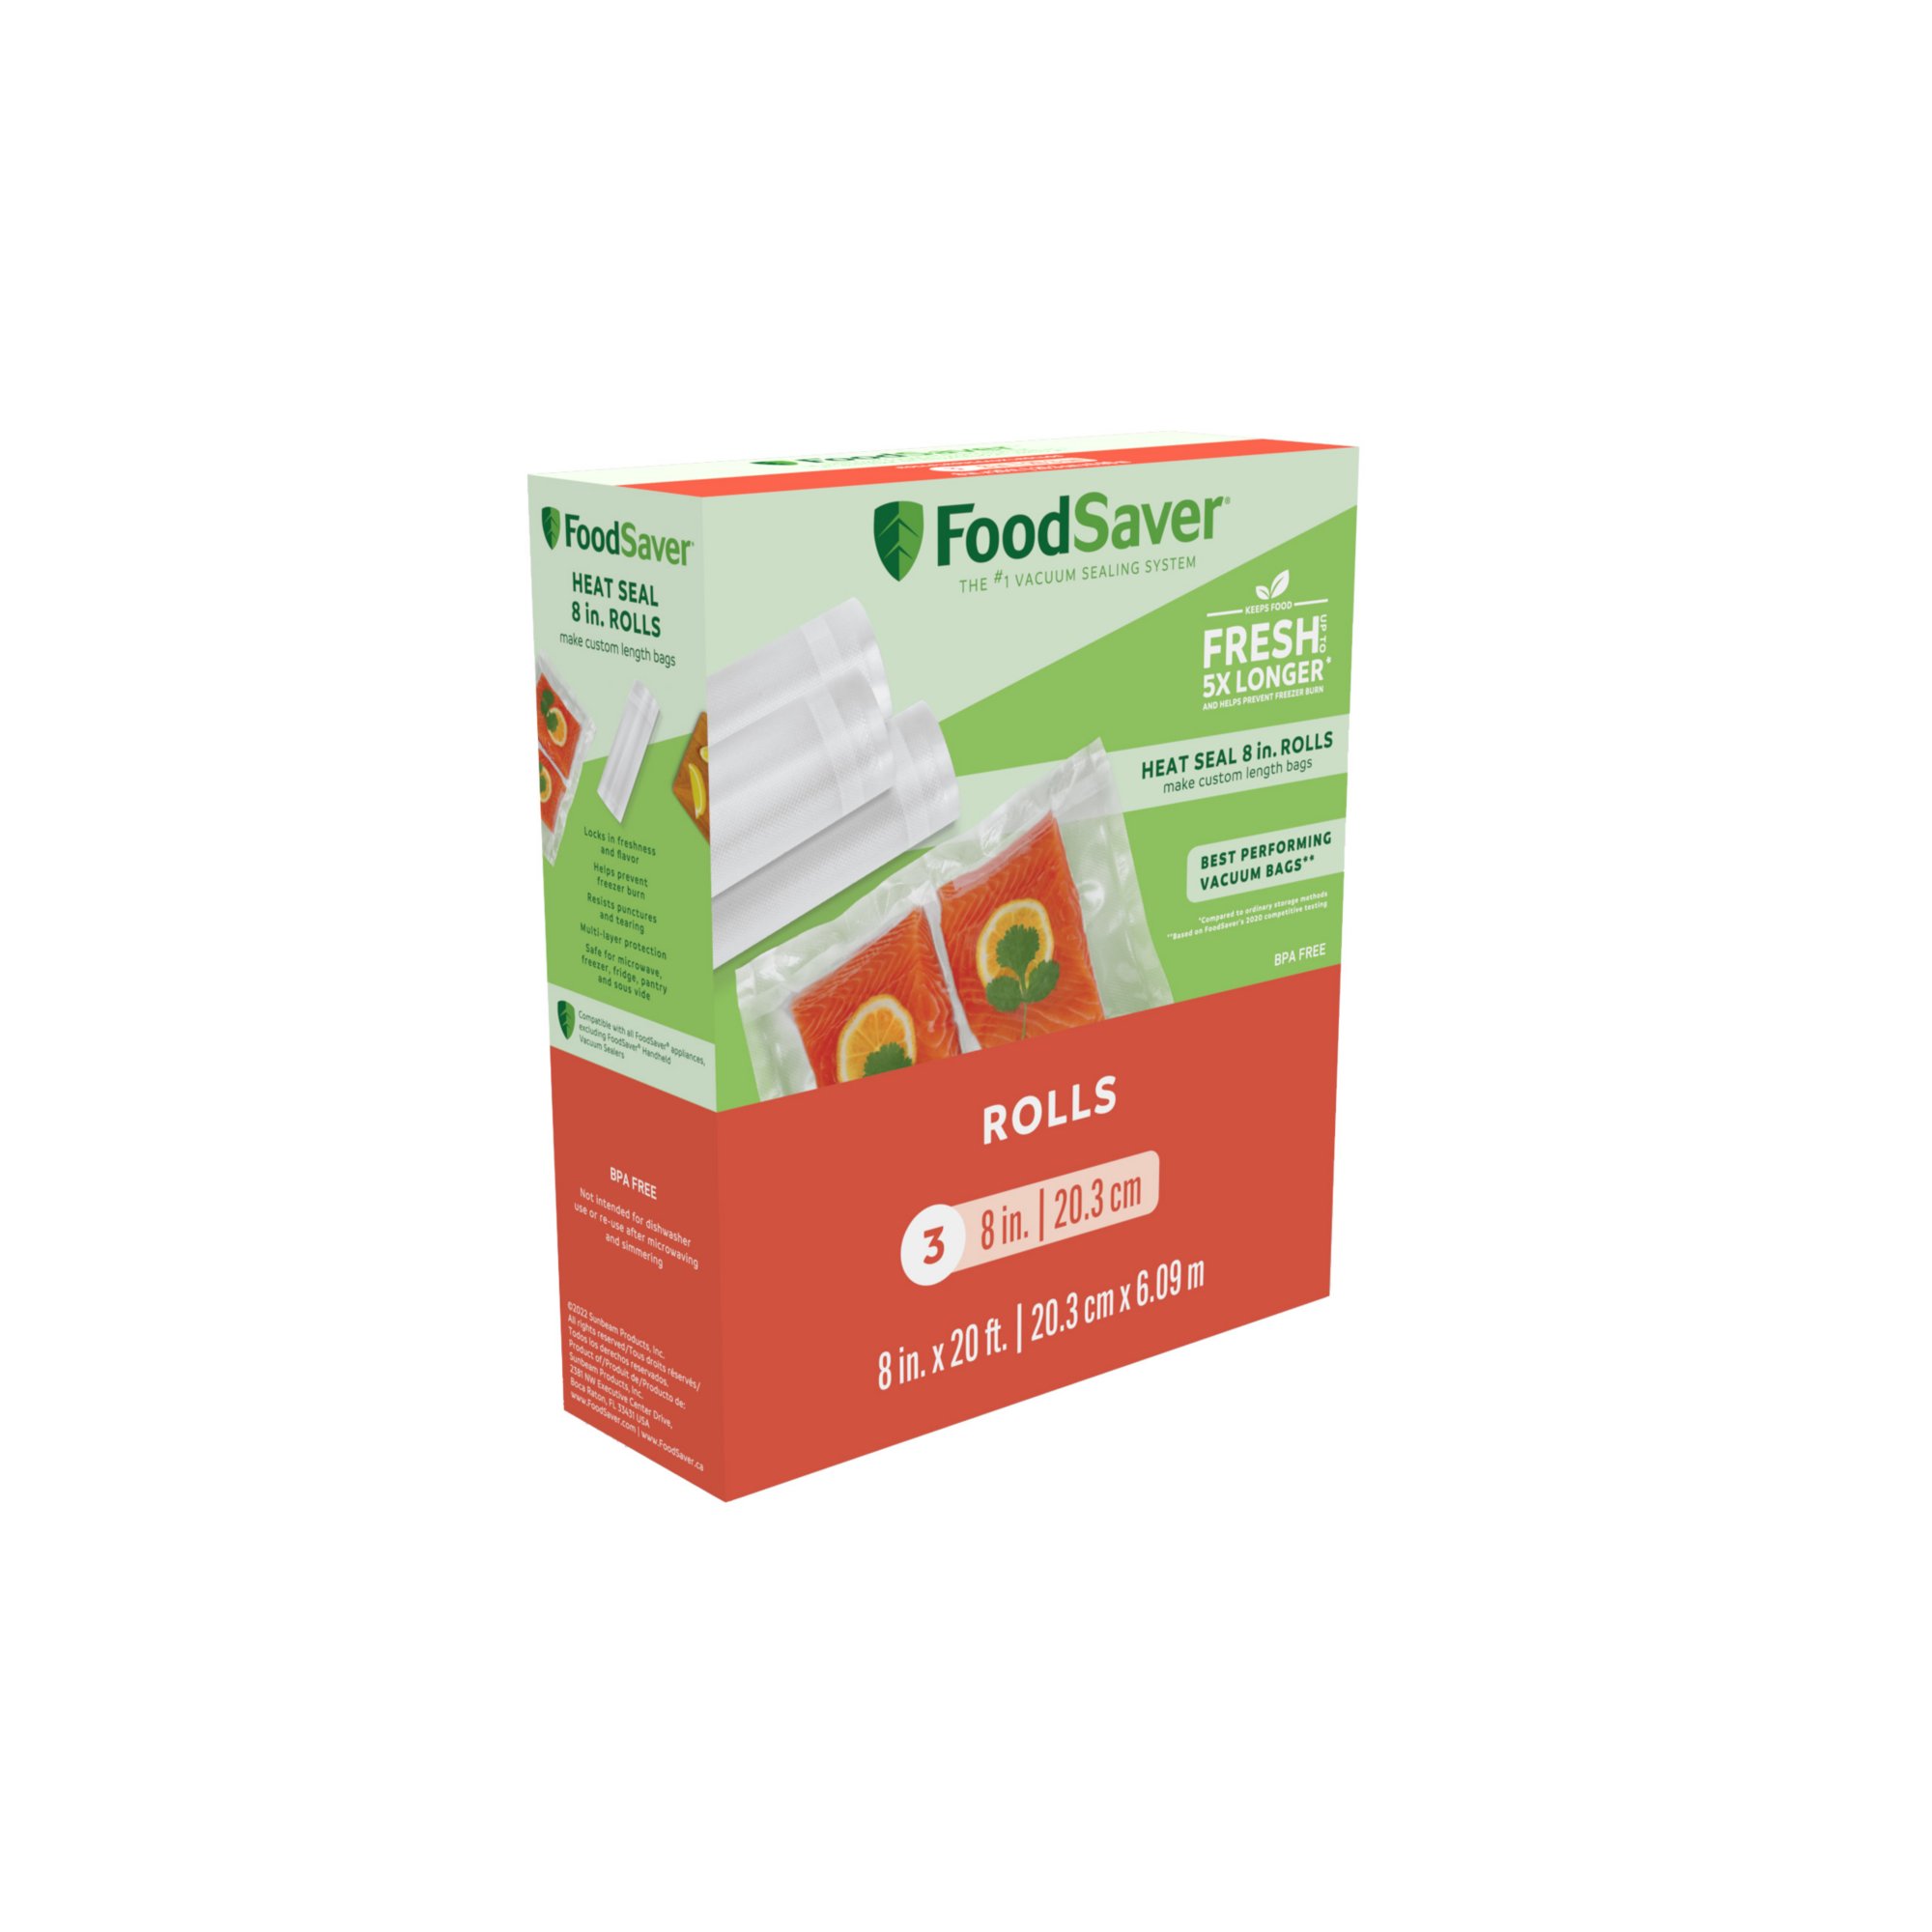 FoodSaver FSFSBF0526-P00 8 in. x 20 ft. FoodSaver Roll - 2 Pack 